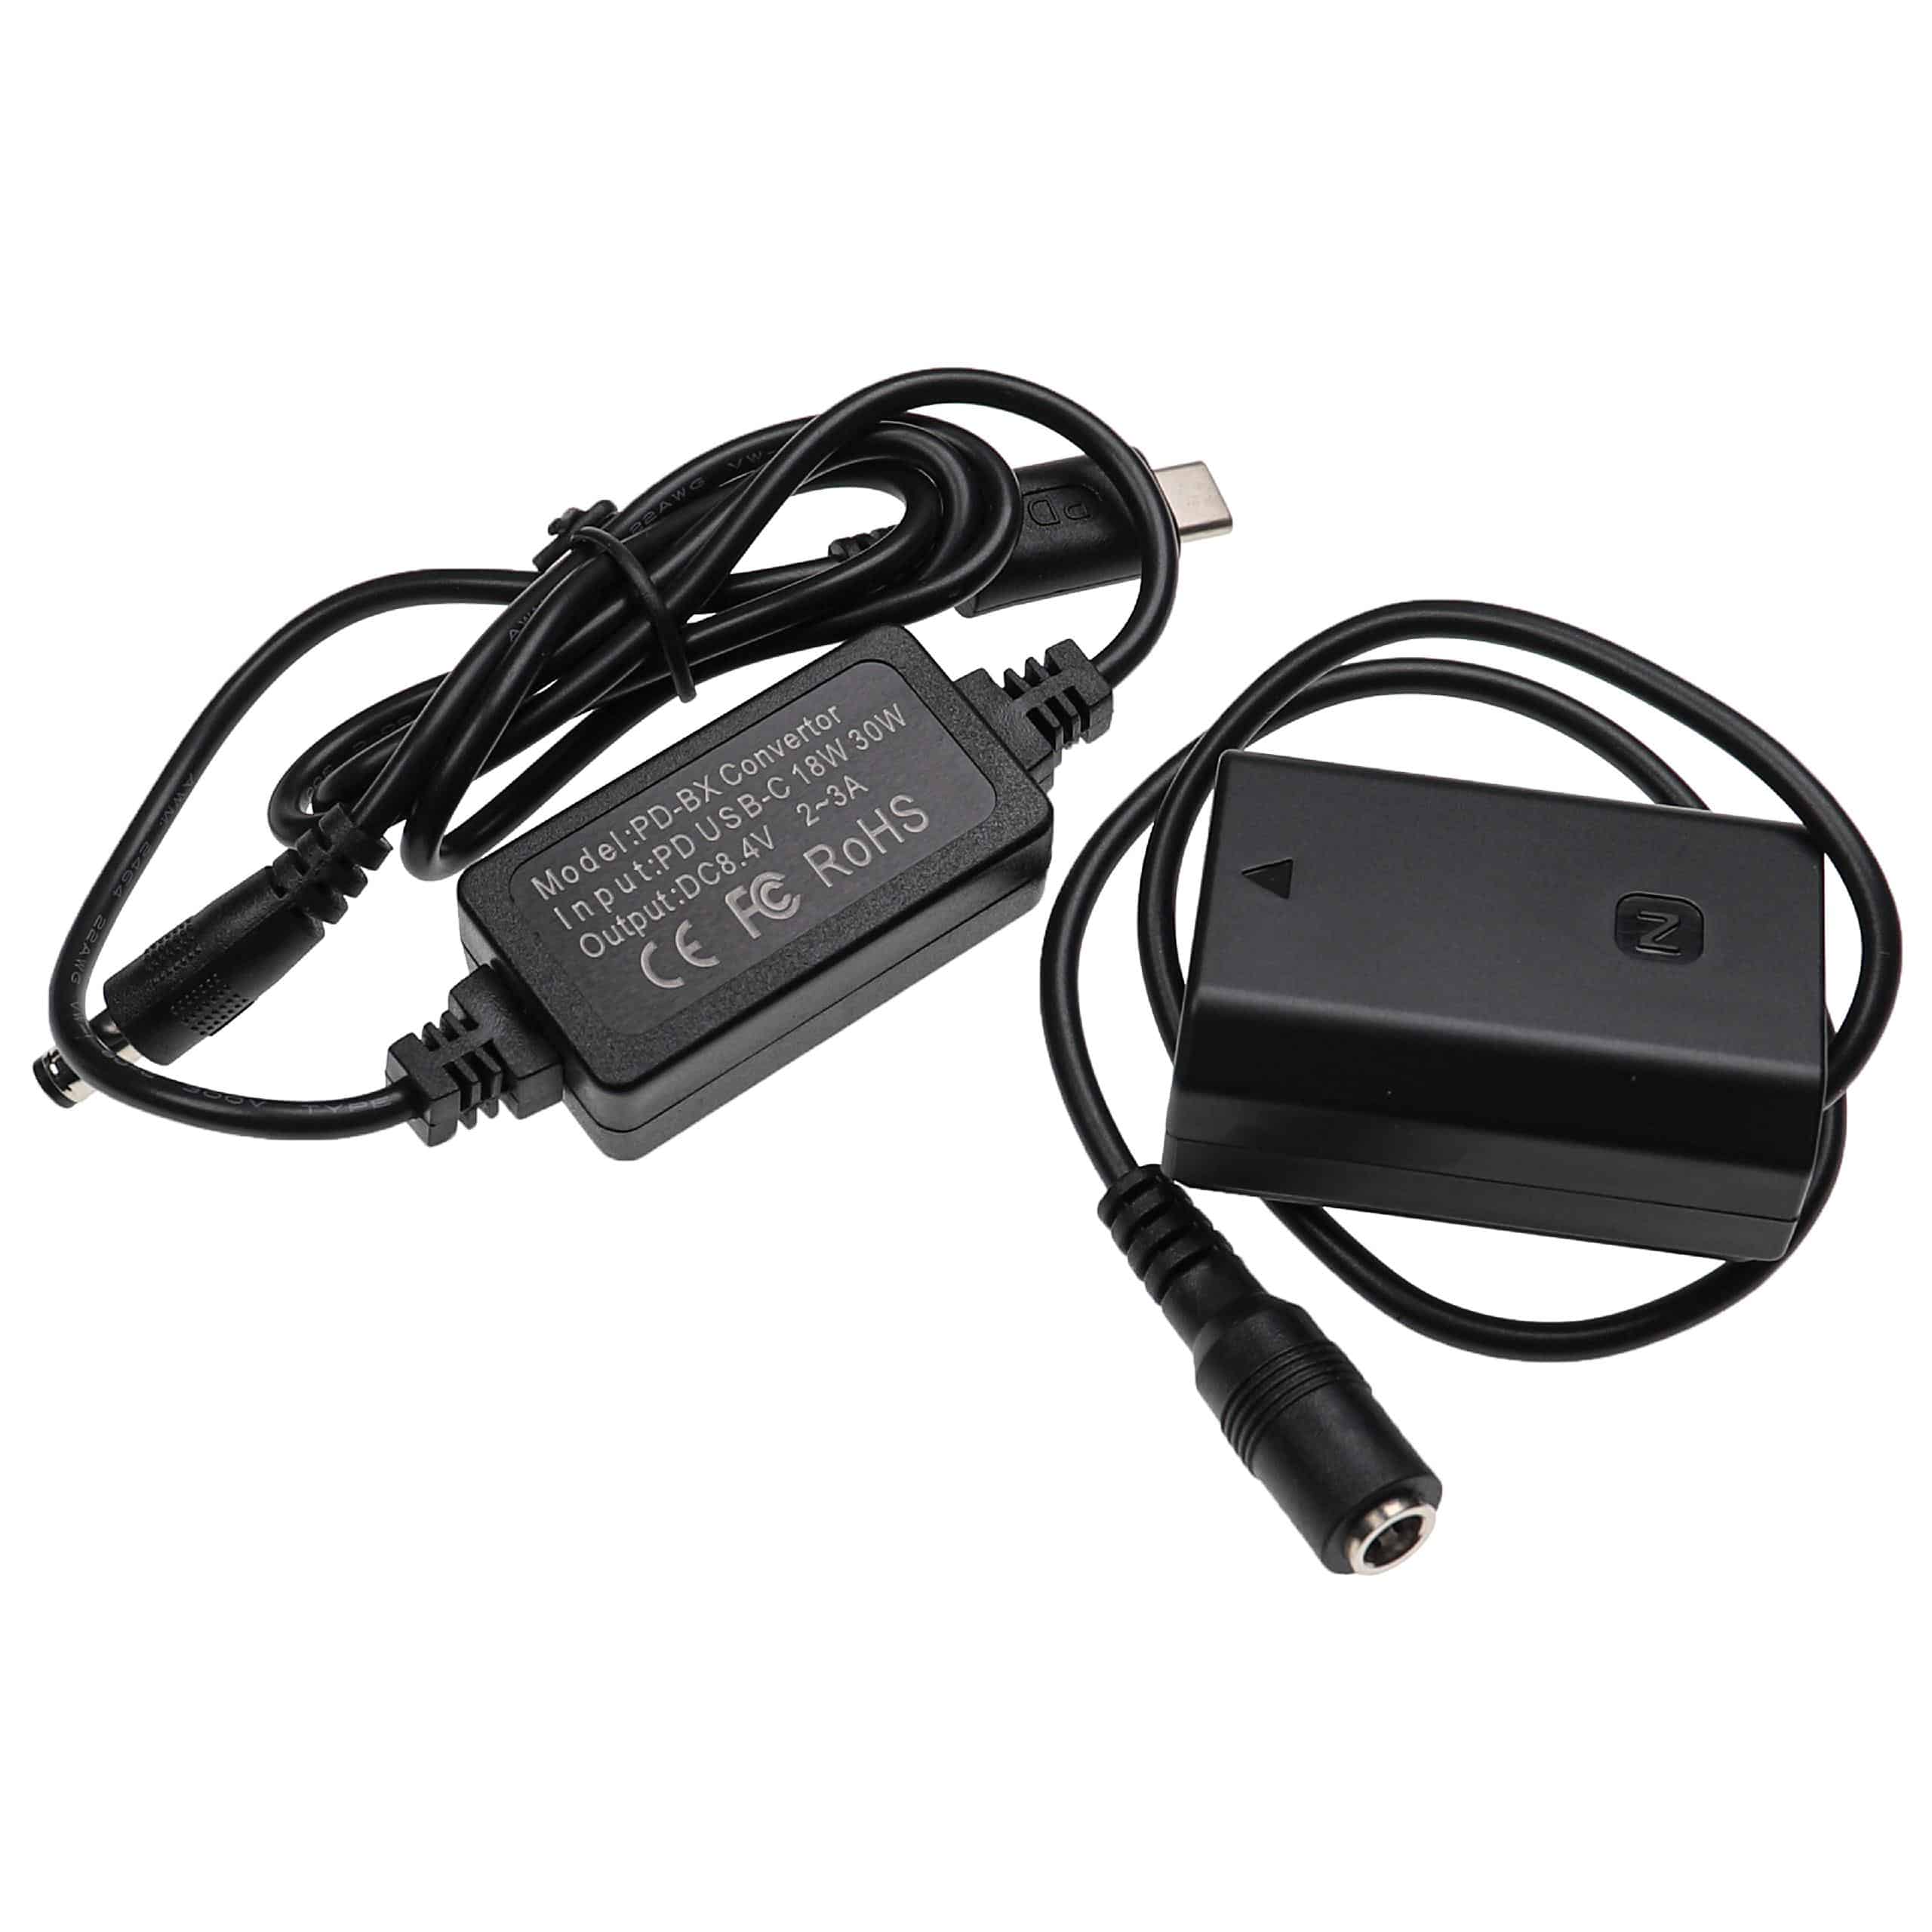 Bloc secteur USB remplace Sony AC-FZ100 pour caméra Sony + coupleur DC comme Sony NP-FZ100